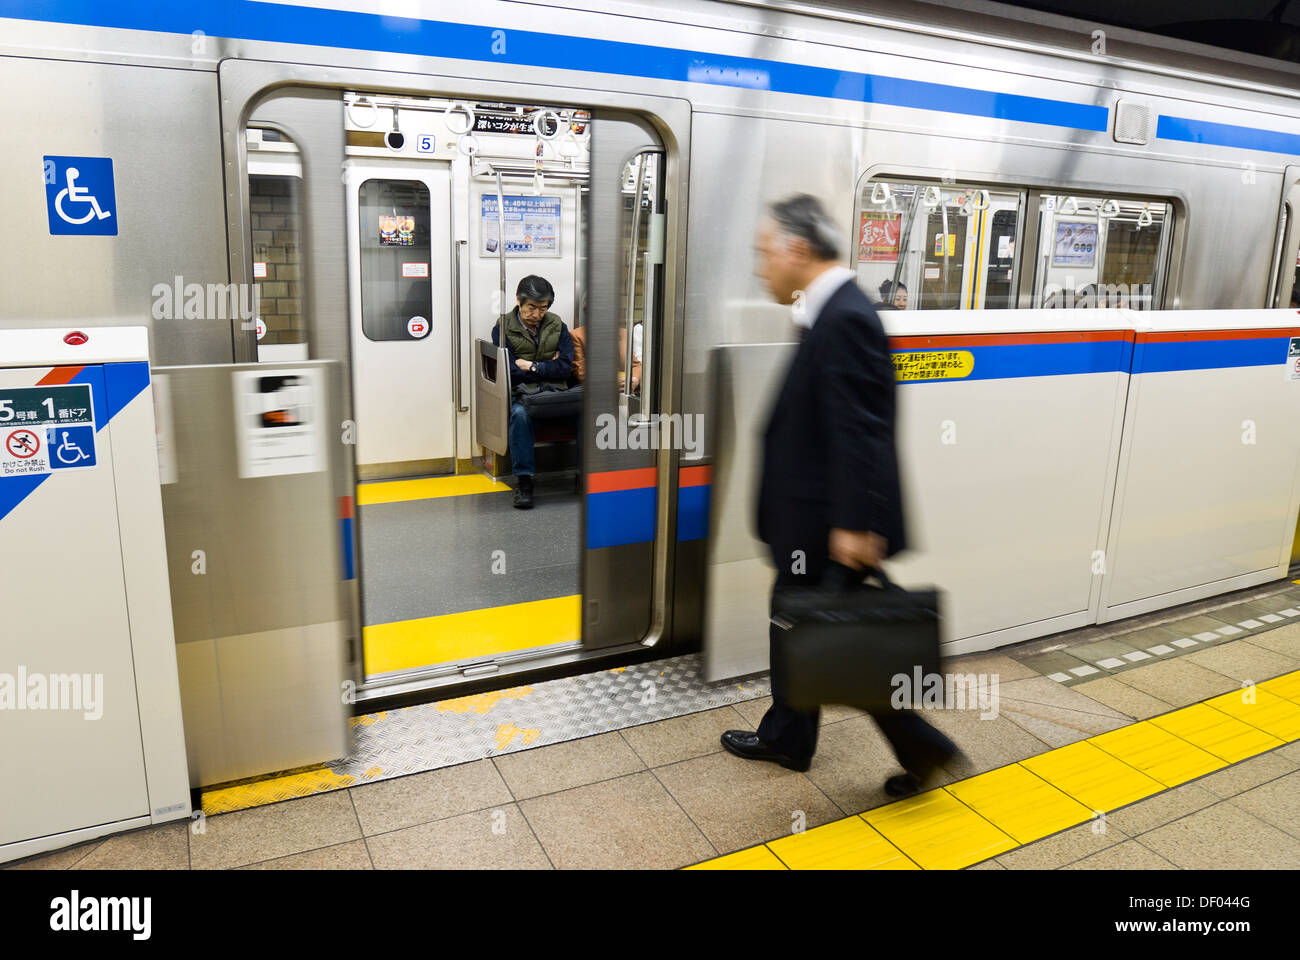 La stazione della metropolitana la piattaforma a Suidobashi, Tokyo, Giappone, ha cancelli di sicurezza che apre solo quando il treno arriva. Foto Stock